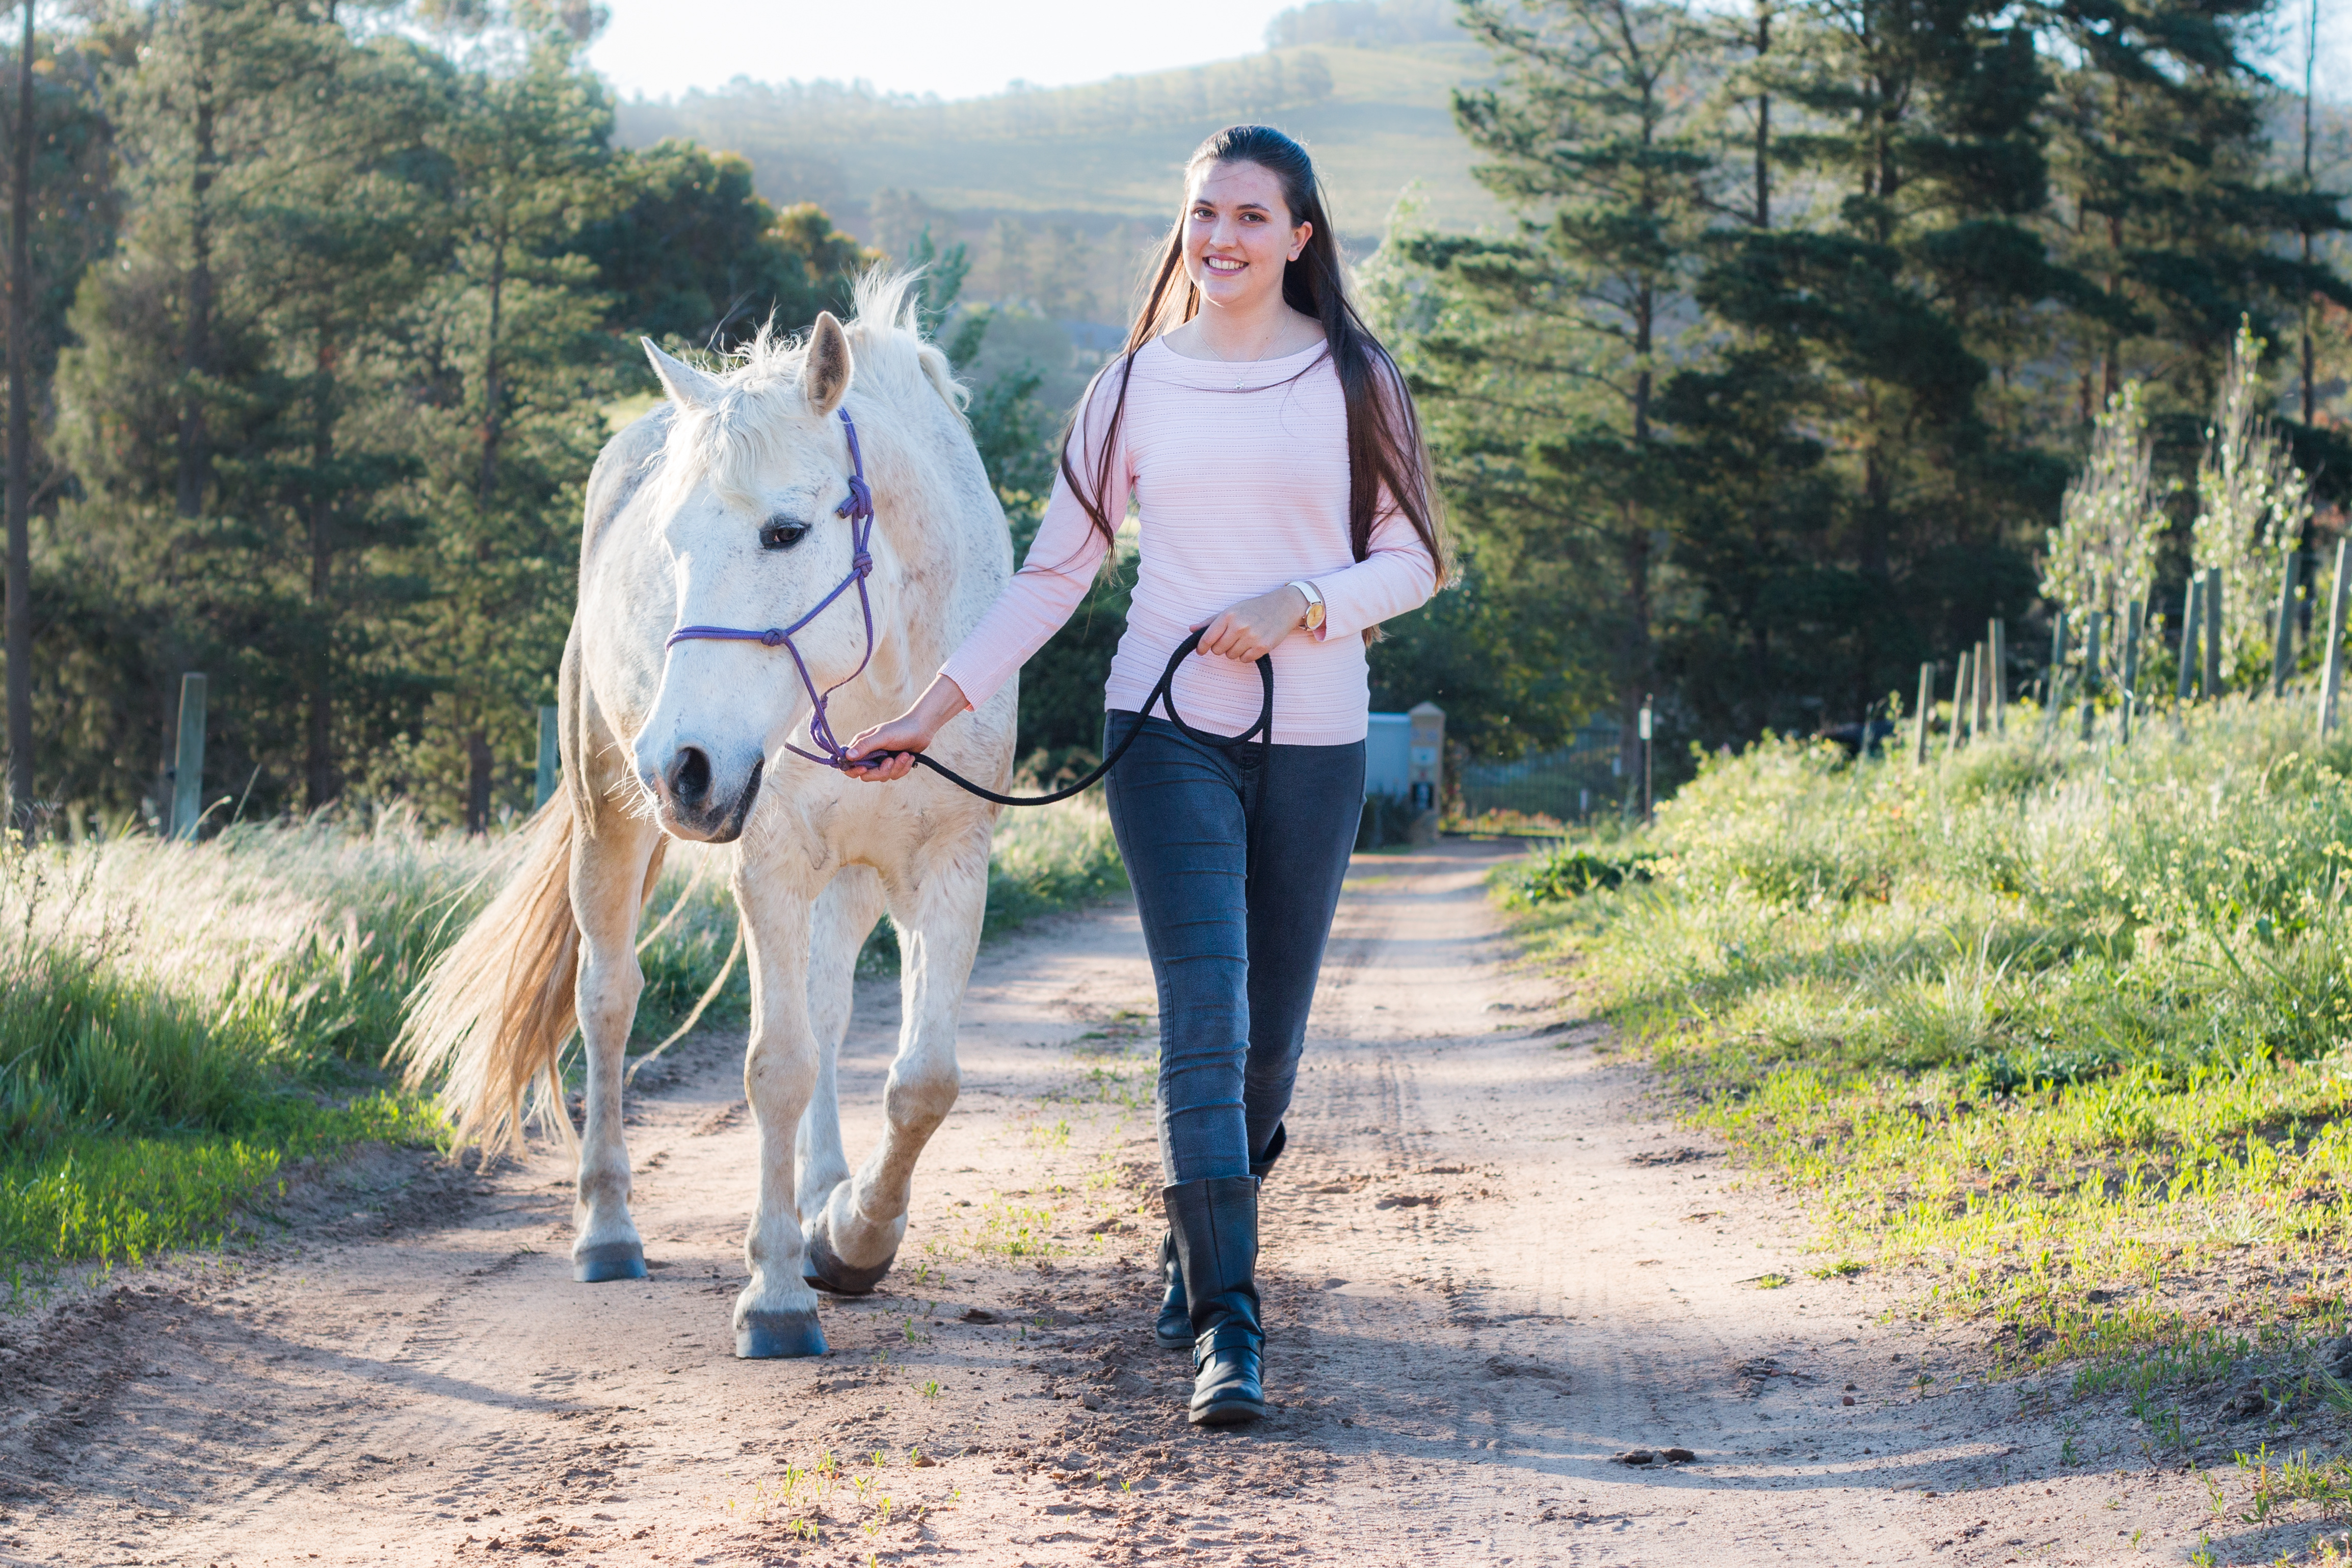 A girl walking a white horse down a dirt road